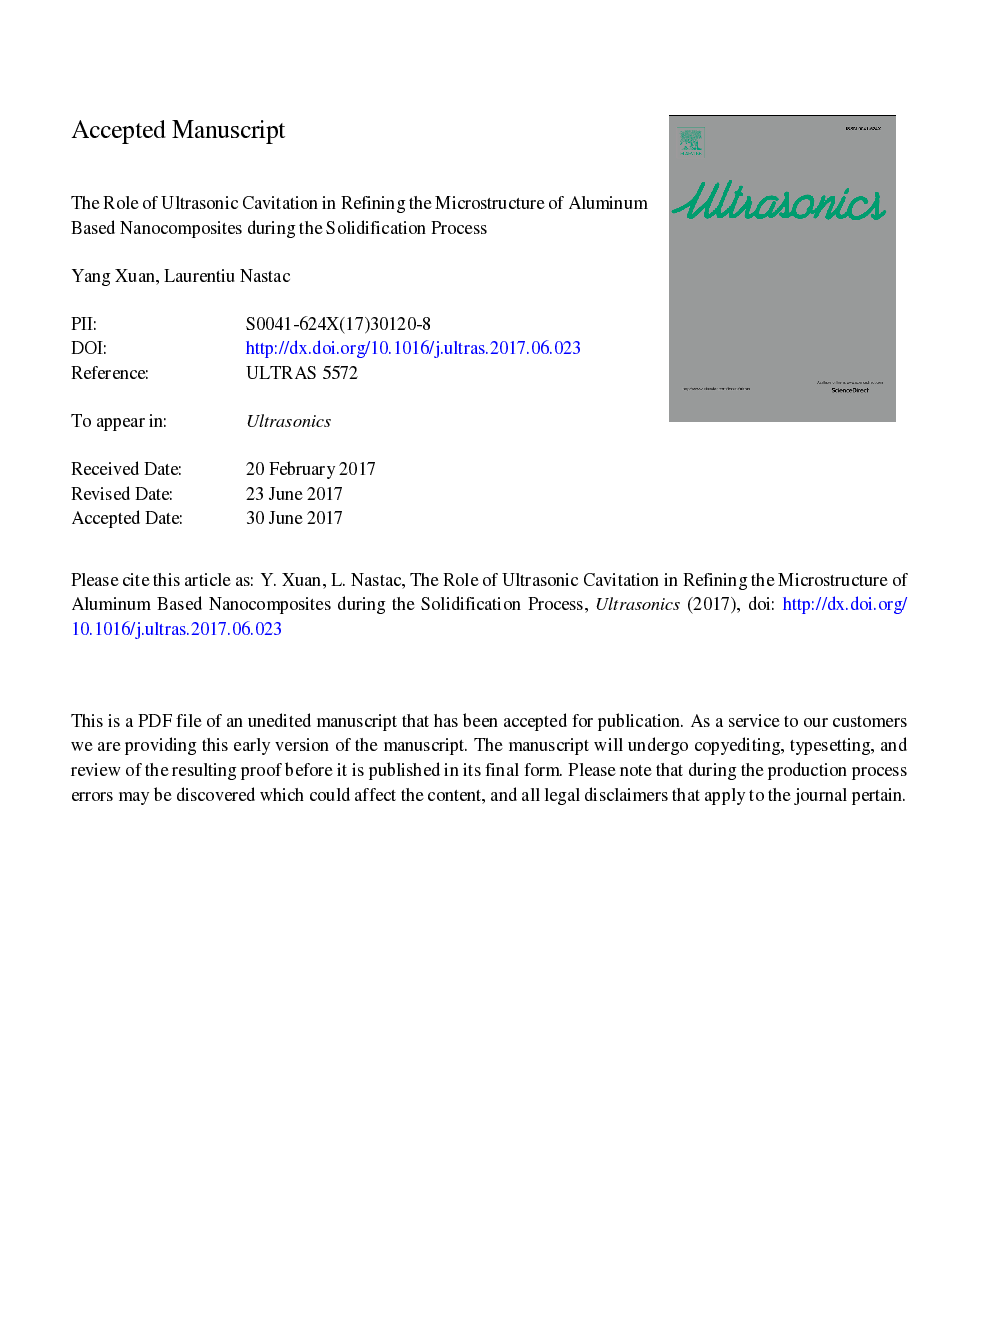 نقش کاویتاسیون اولتراسونیک در پالایش میکروساختار نانوکامپوزیت های آلومینیوم در طی فرآیند جامد سازی 